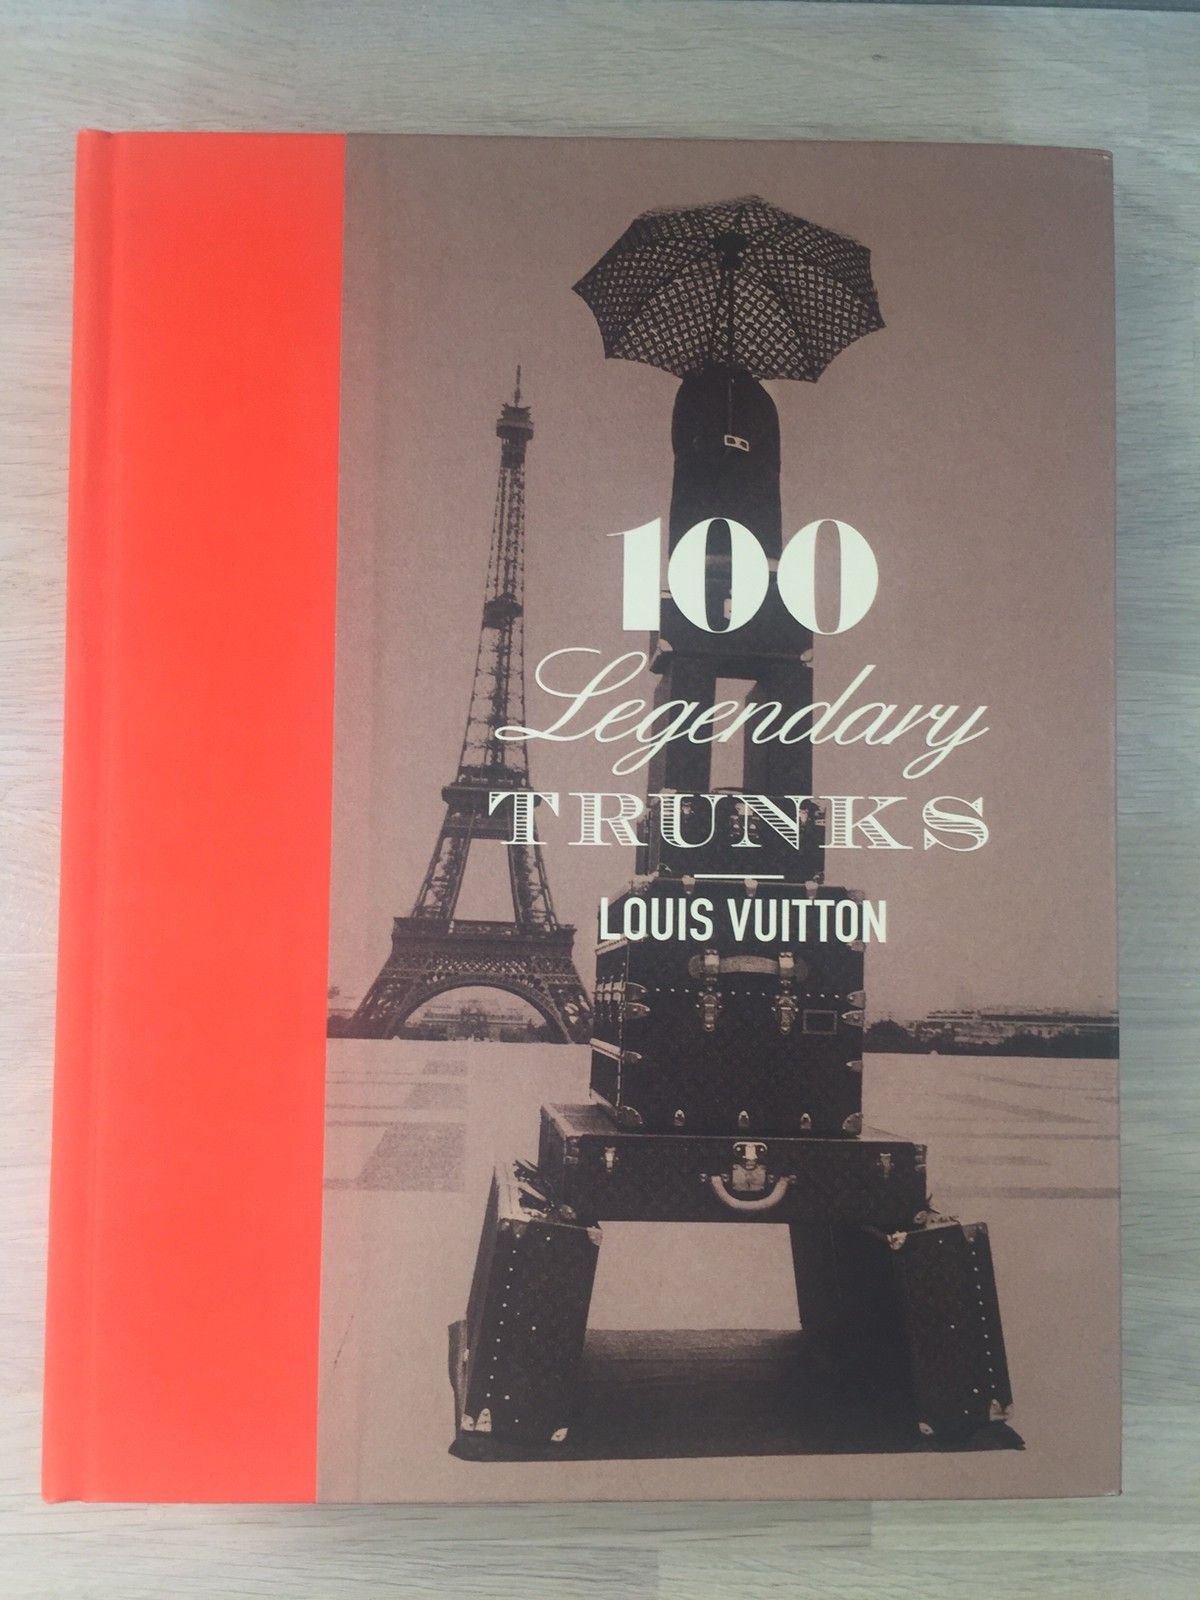 Louis Vuitton: 100 Legendary Trunks - Eric Leonforte Pierre